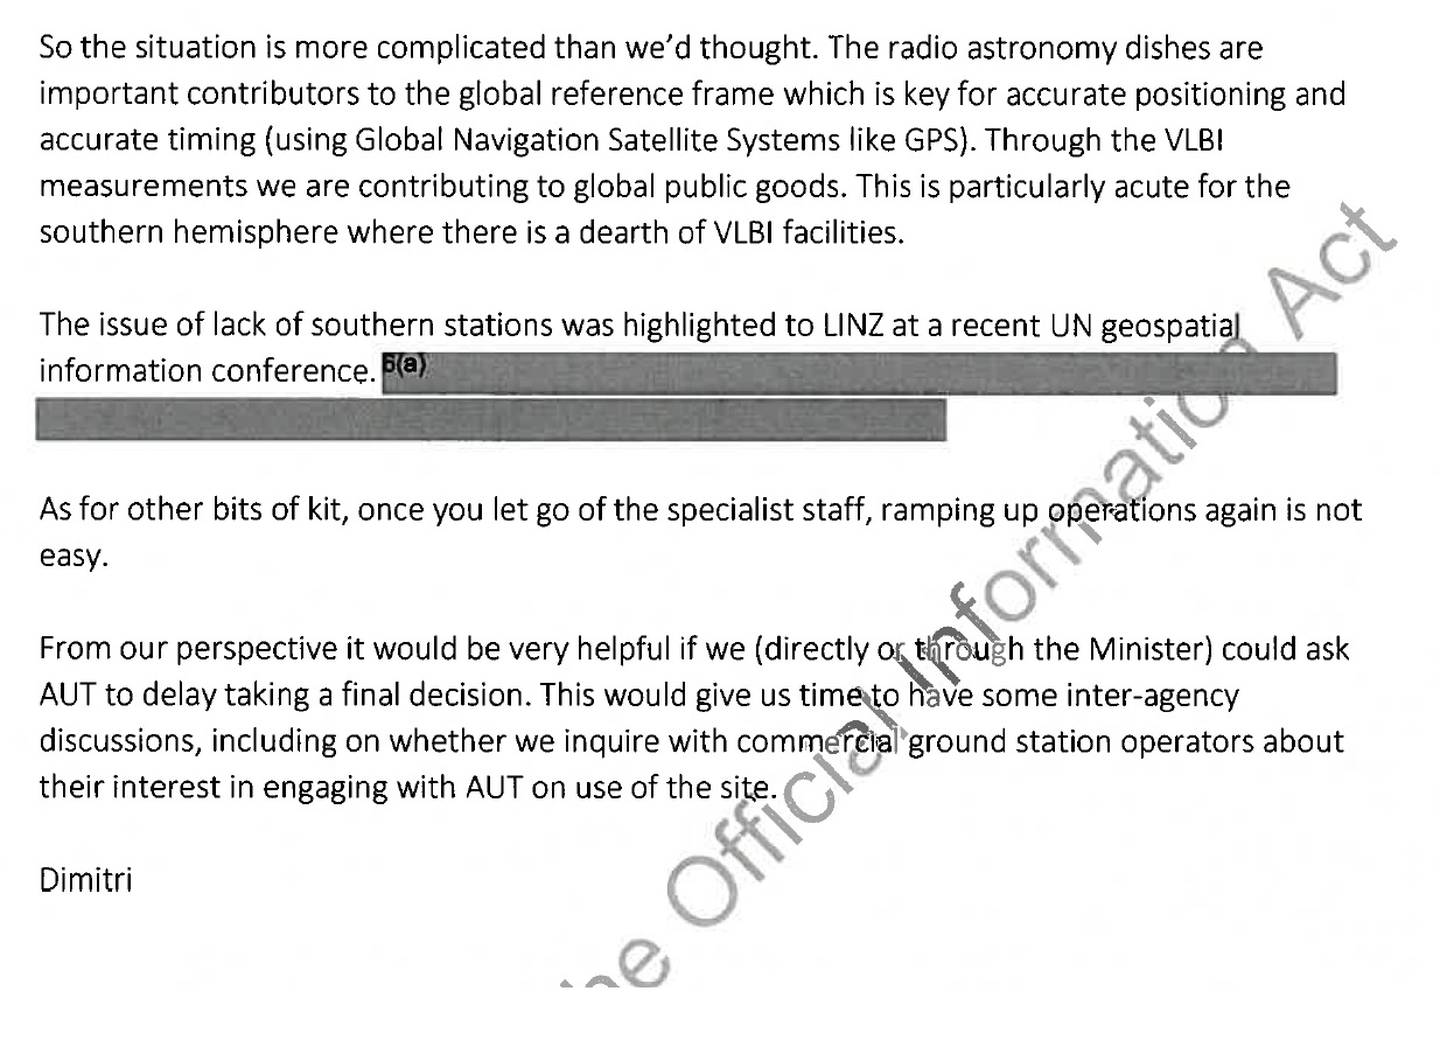 Un correo electrónico enviado por el líder del equipo de política espacial de MBIE, Dimitri Geidelberg, en agosto.